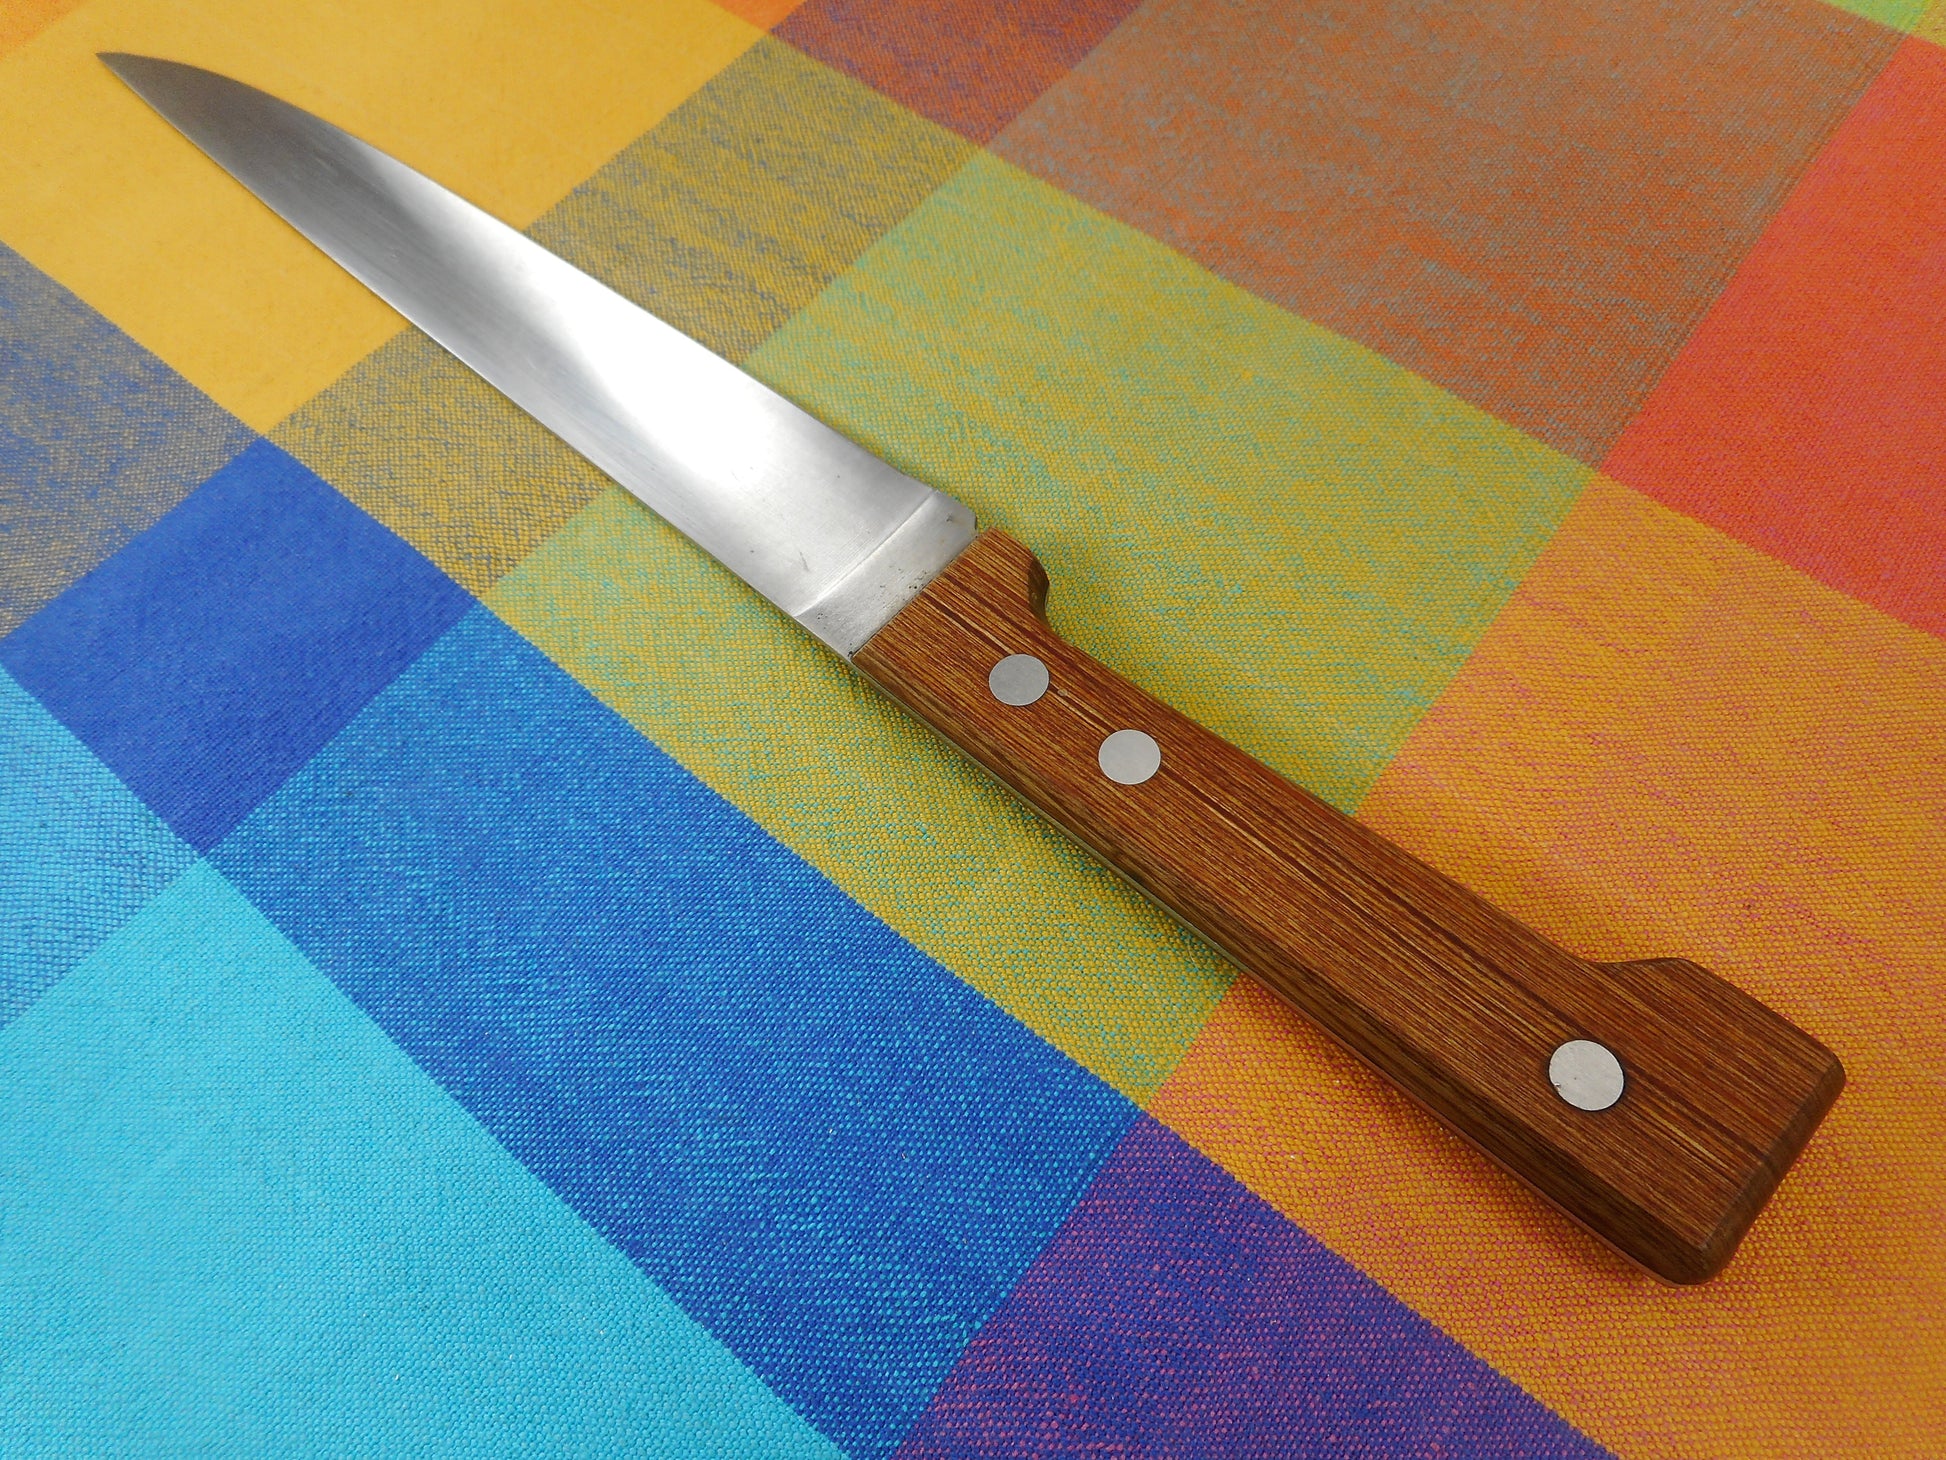 Dansk Gunnar Cyren KItchen Knives - Stainless Slicing Carving - Teak Handle 8" Blade Japan